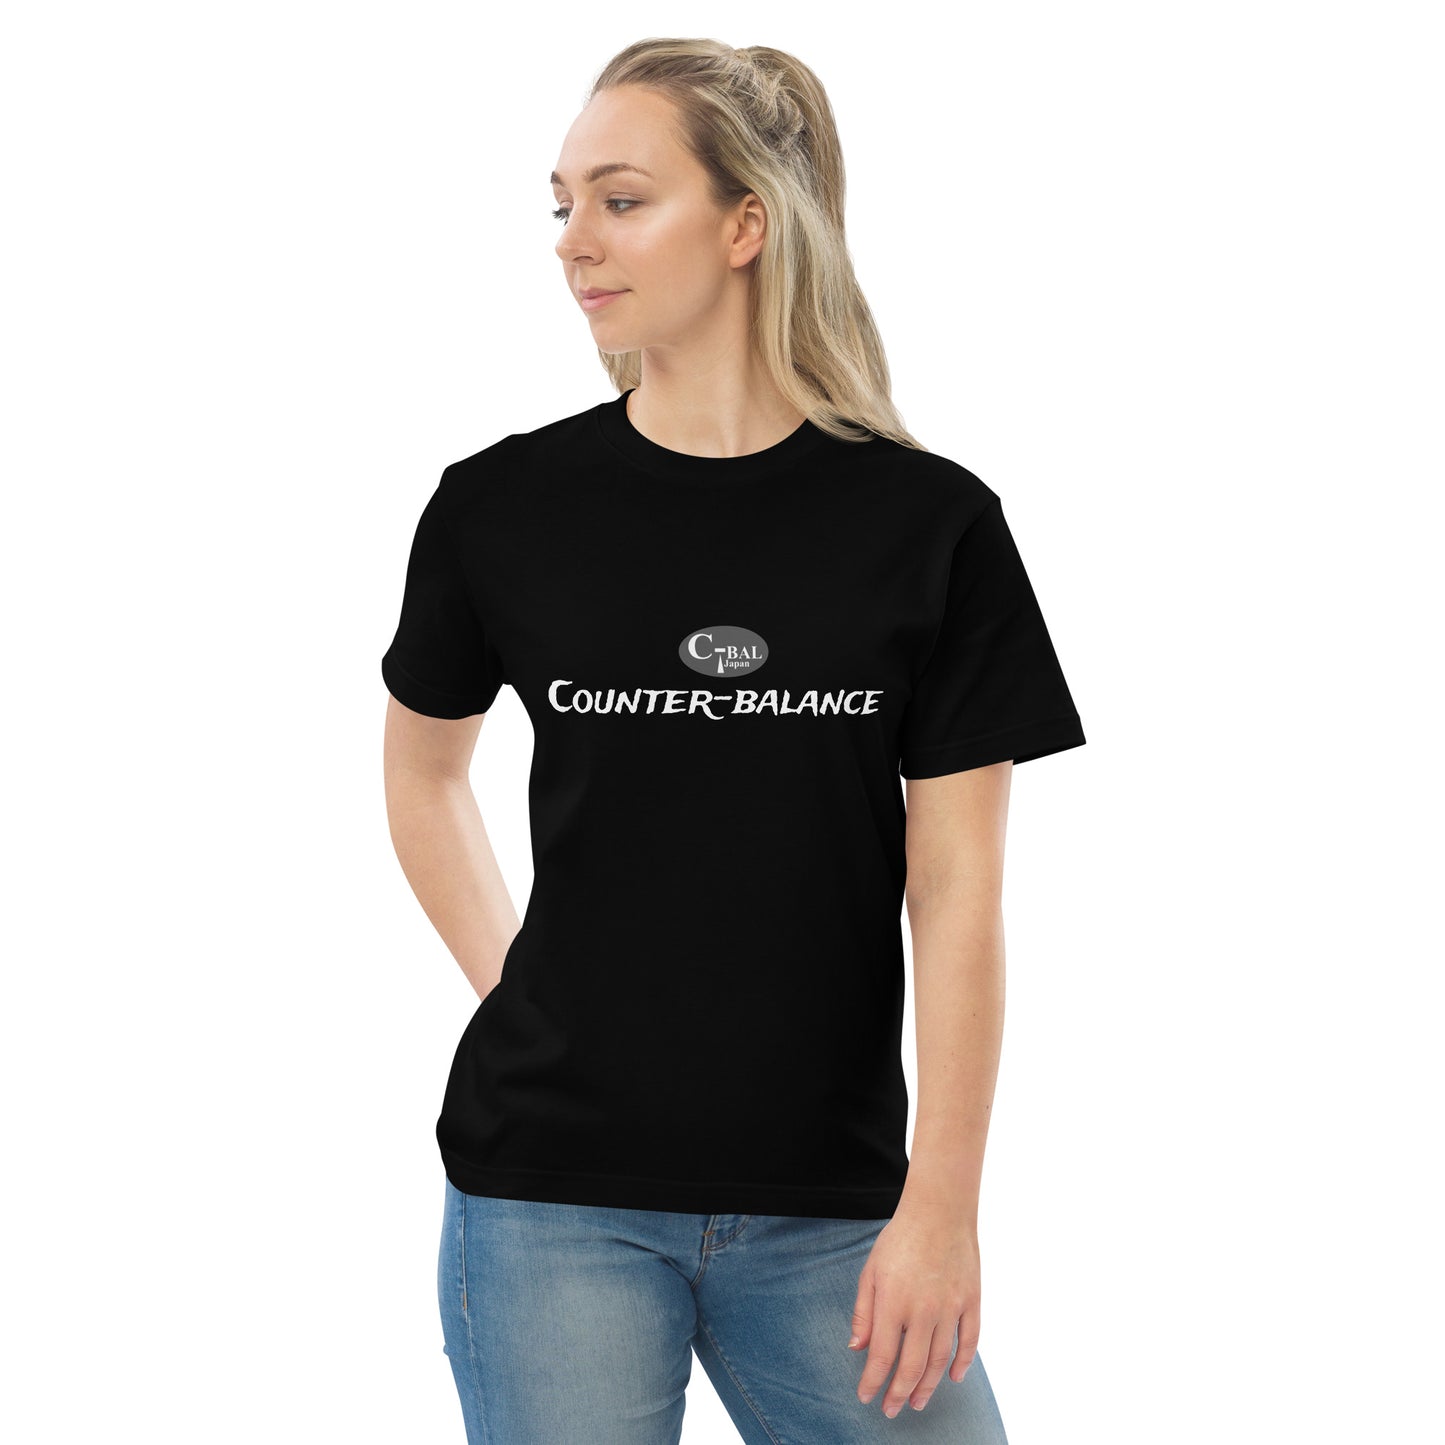 A005 - High Quality Cotton T-shirt (C-BAL : Black / Gray)